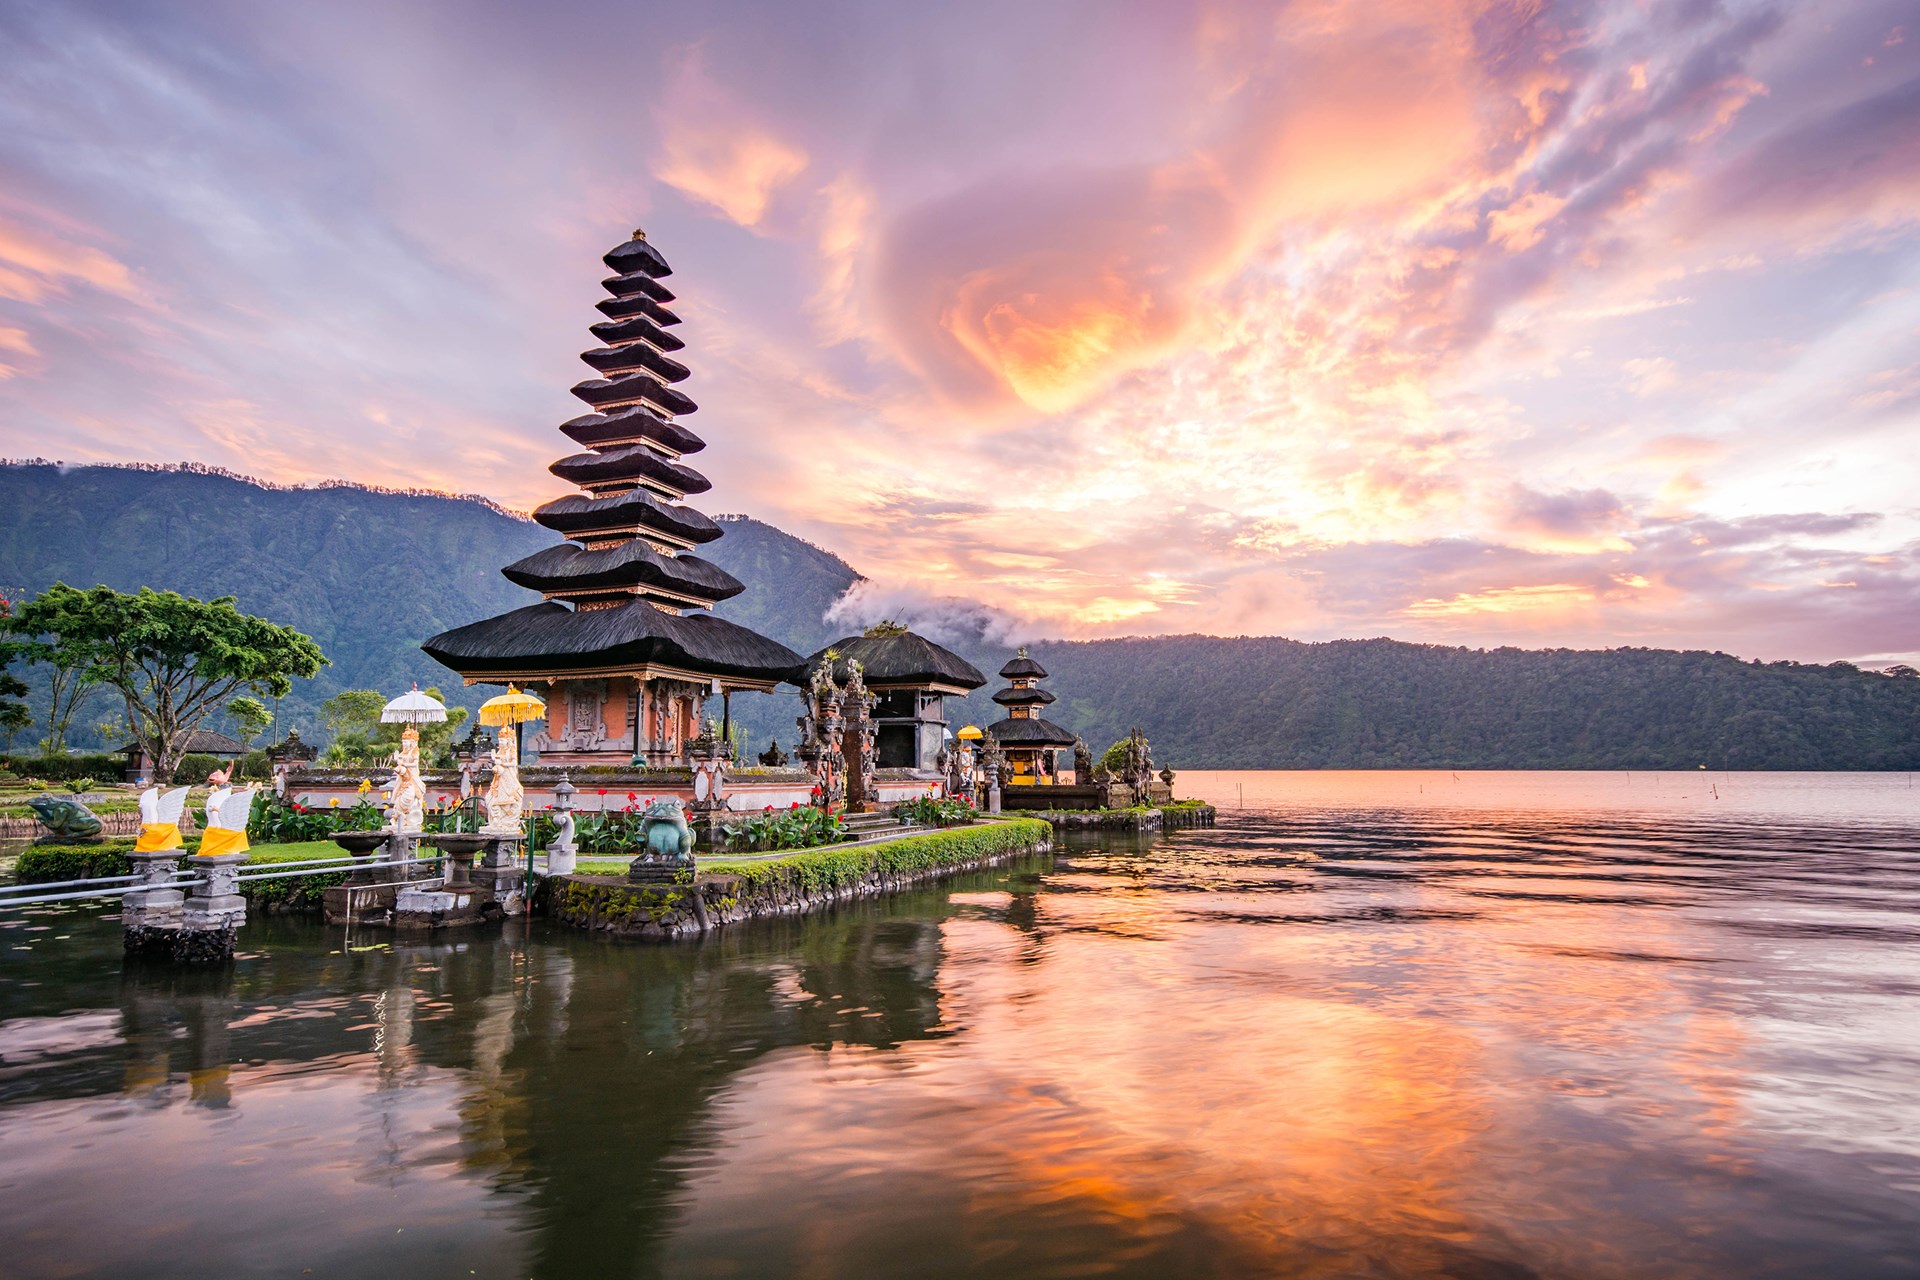 Adem de Indonesische cultuur... Combi Bali & Lombok